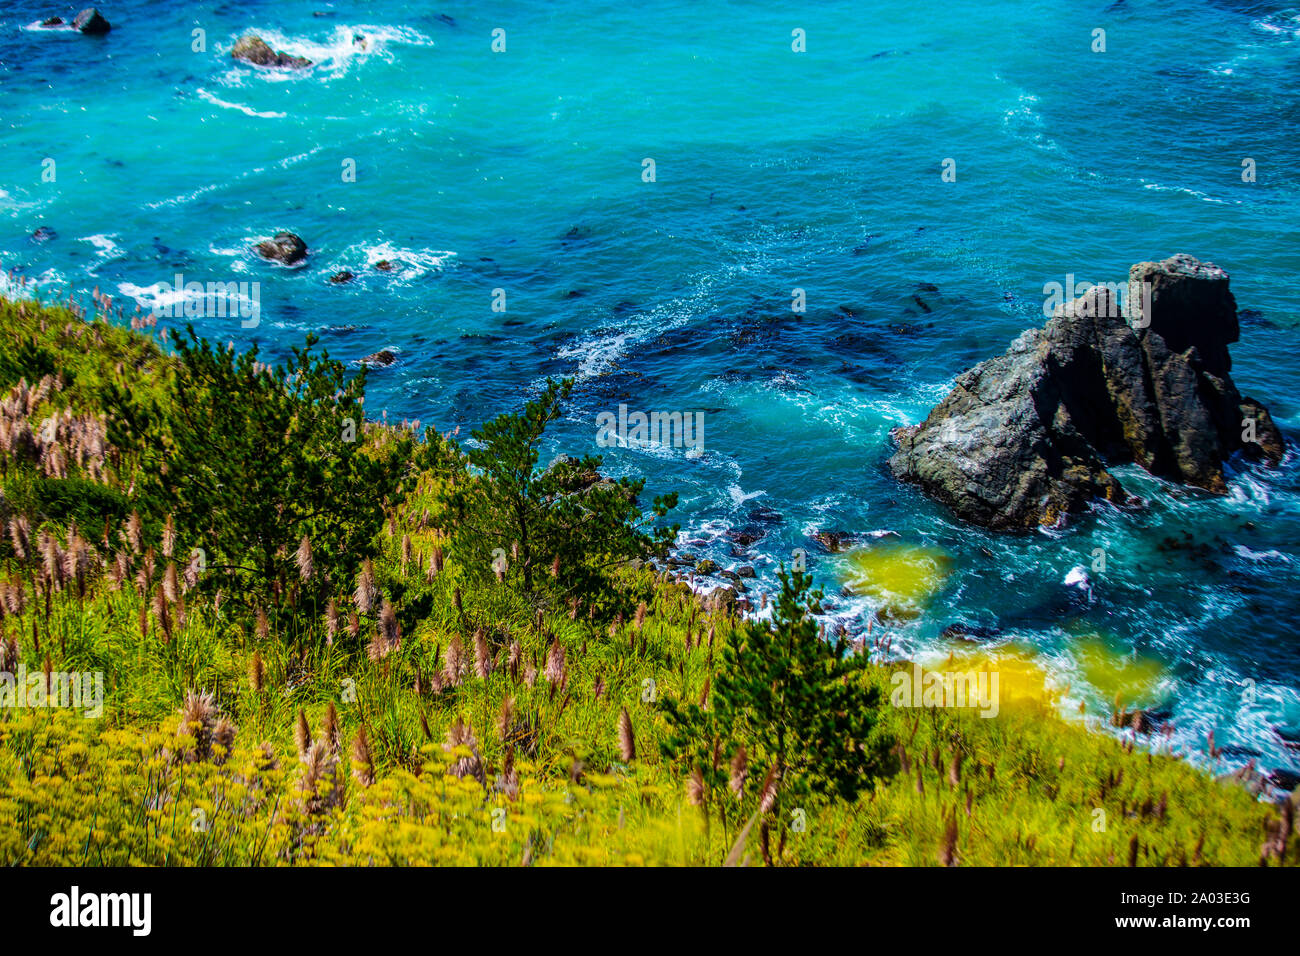 Der pazifische Ozean am Küstenabschnitt Big Sur in Kalifornien. Türkises Wasser, Steilfelsen und Blumenwiese bilden einen schönen Kontrast. Stock Photo